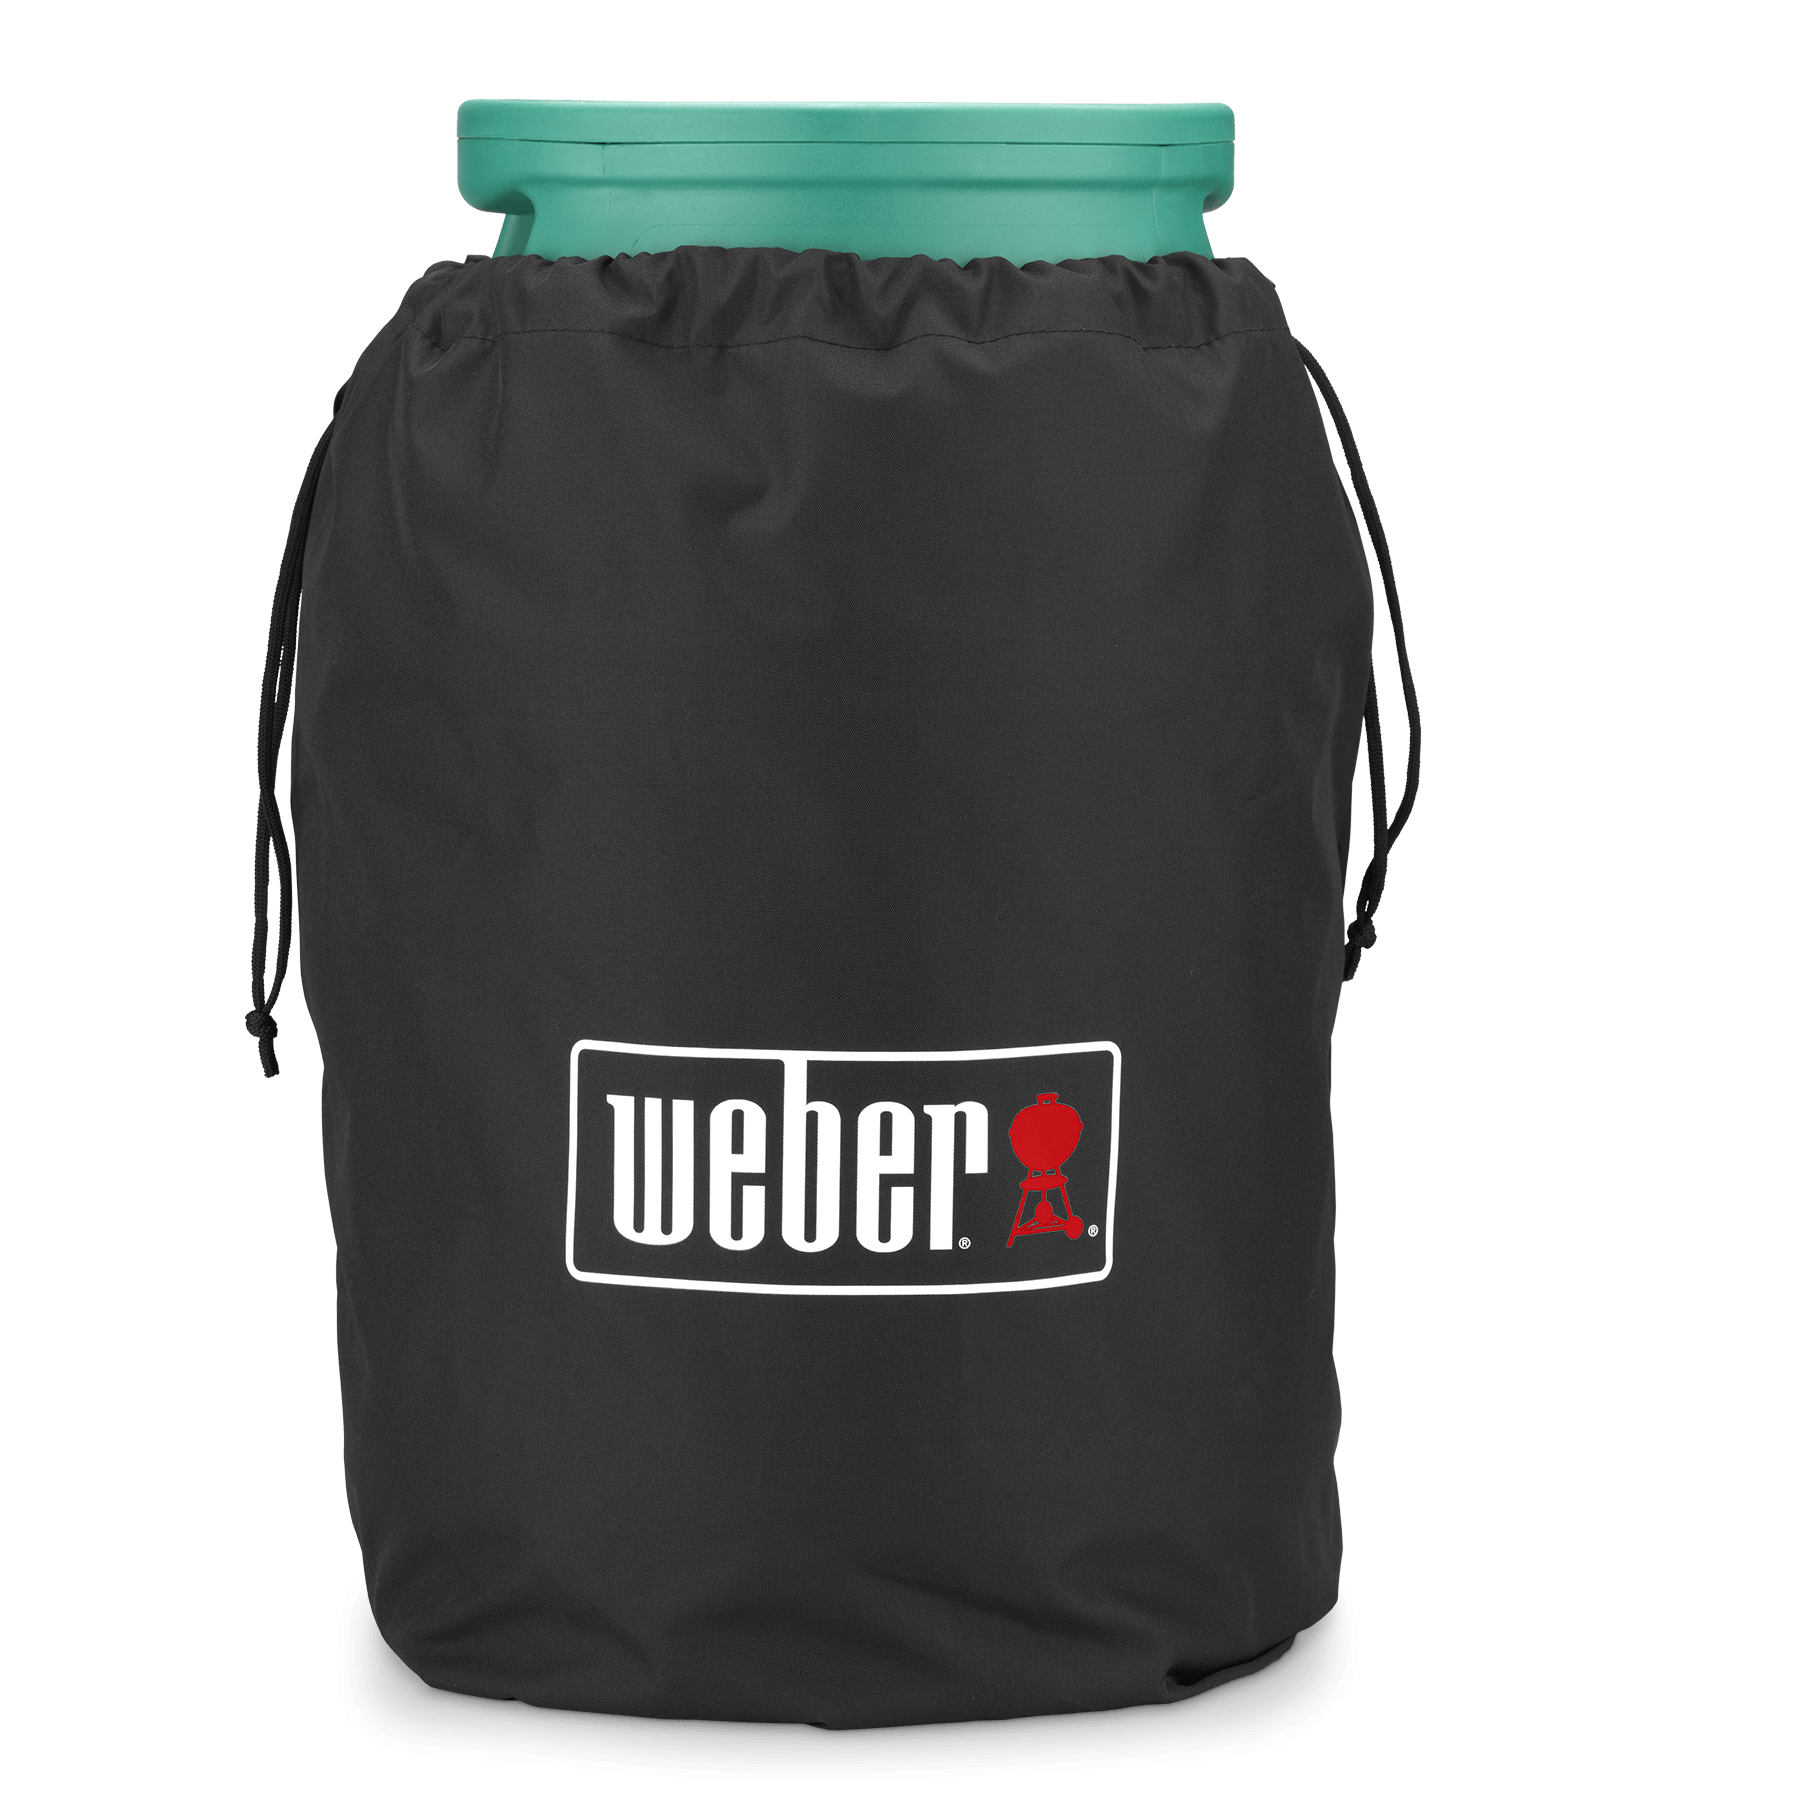 Weber Gasflaschenschutzhülle